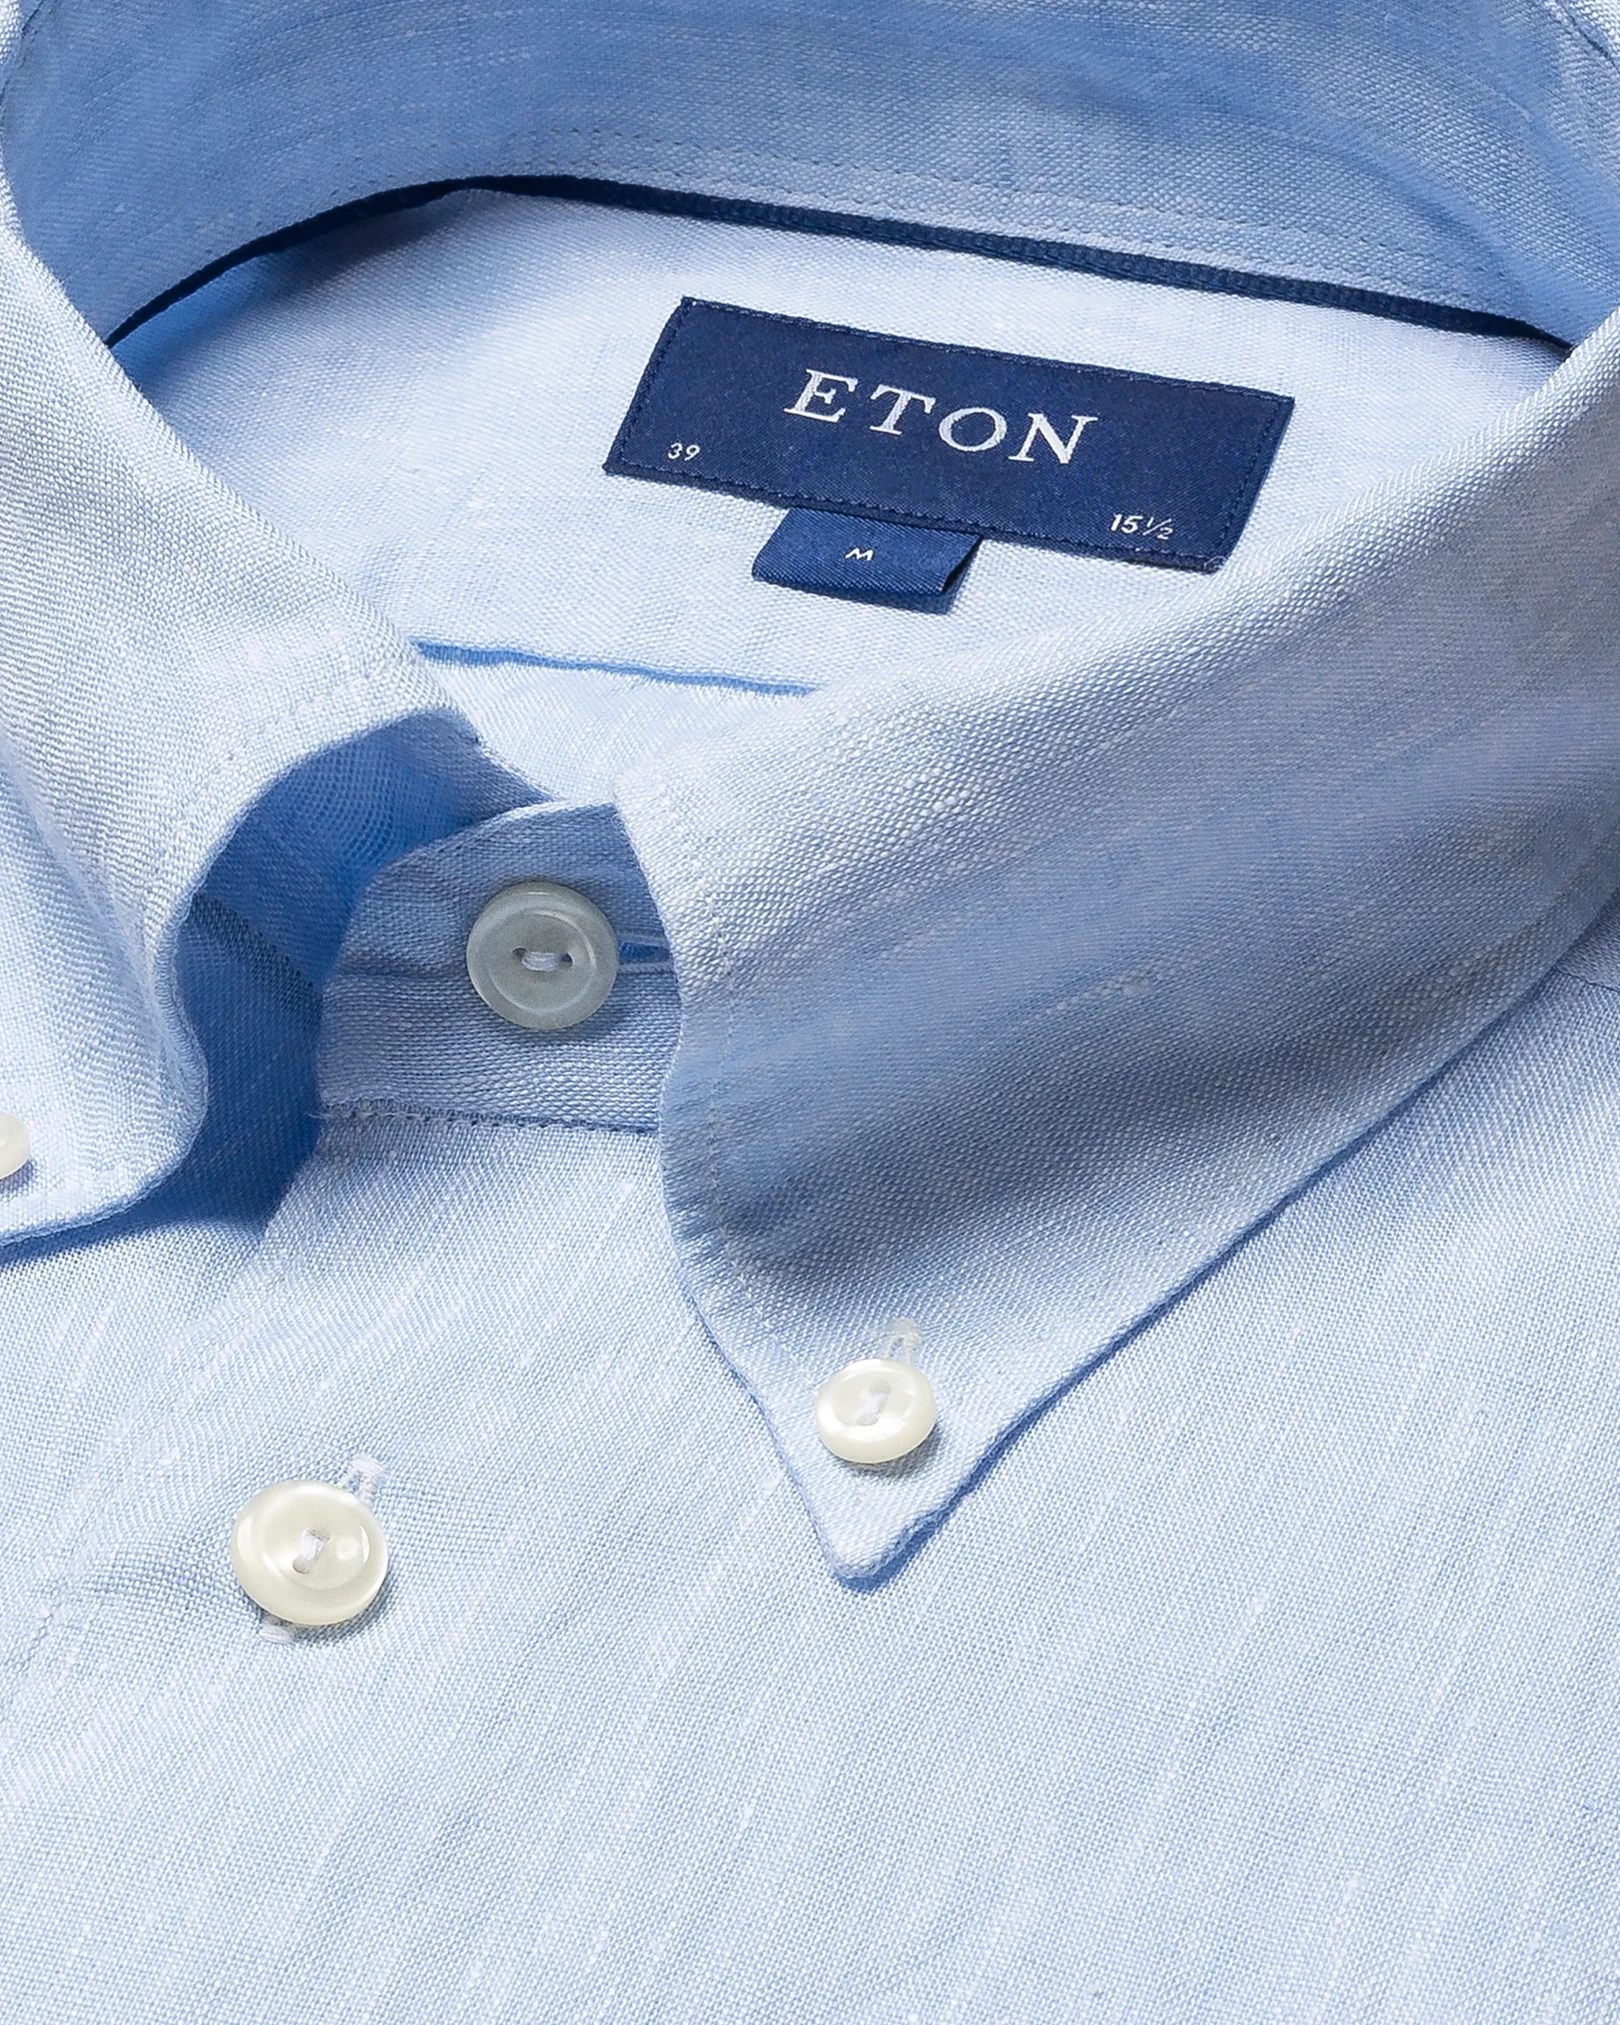 Eton - light blue linen shirt button down collar